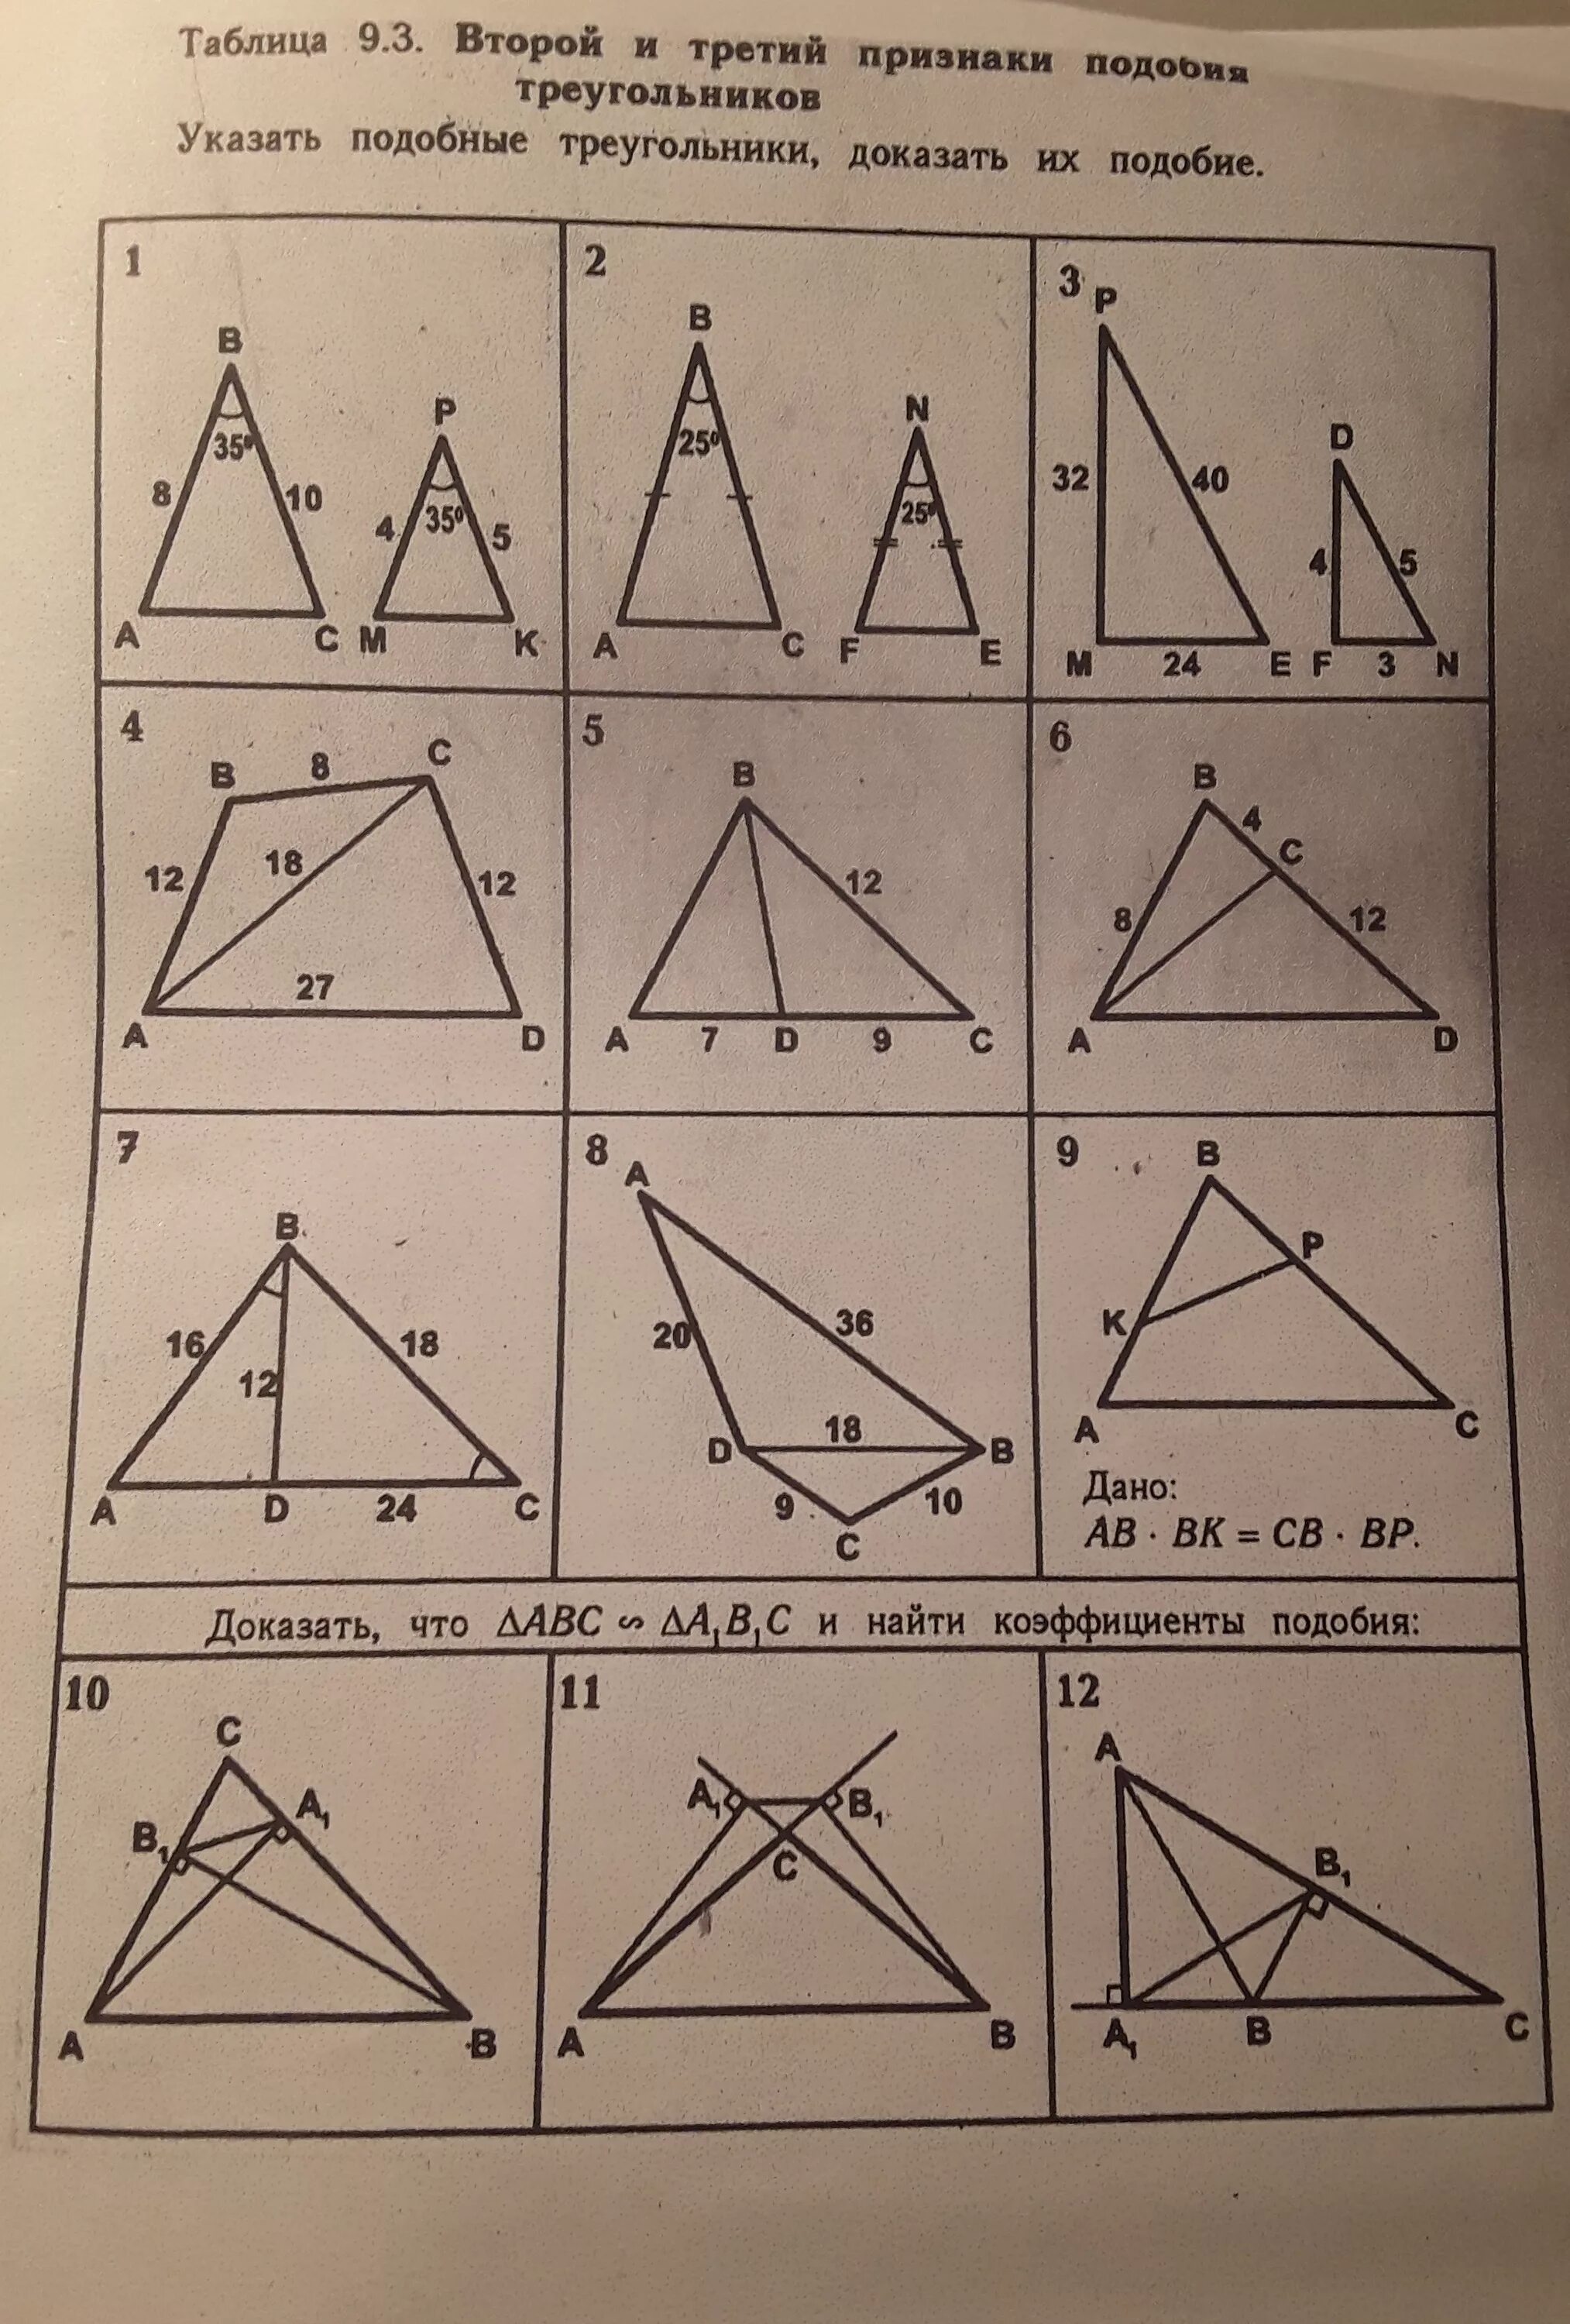 Подпюобие треугольник. Подобрве треугольриаа. Падобии треугольников. Признаки подобиятреугольникков.